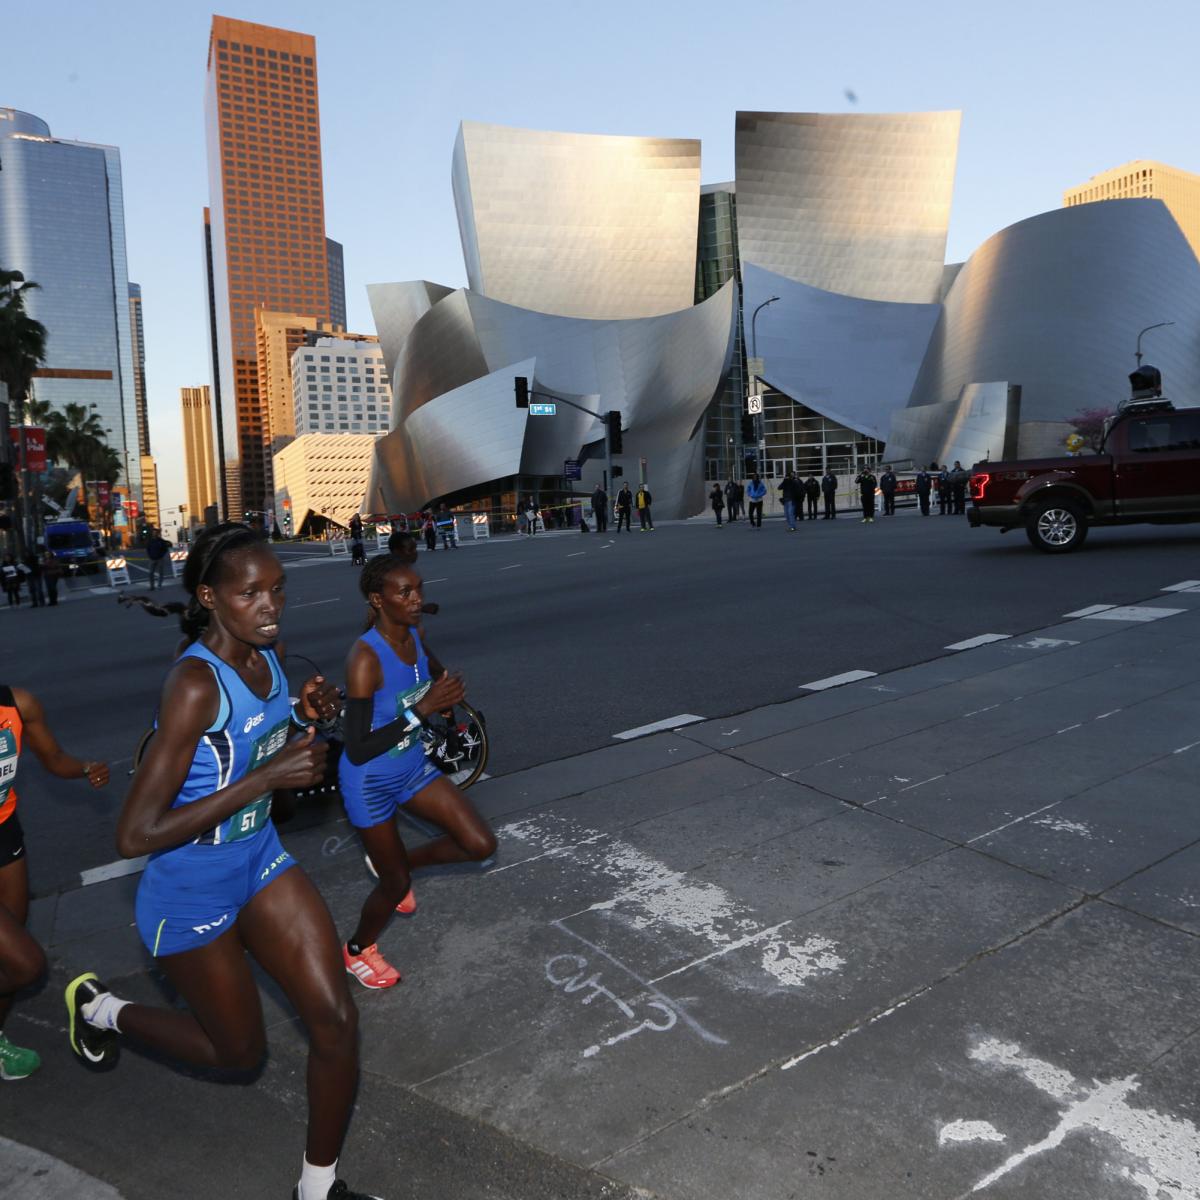 LA Marathon 2020: Route, Course Map, Times, Road Closures and Event Details | Bleacher Report ...